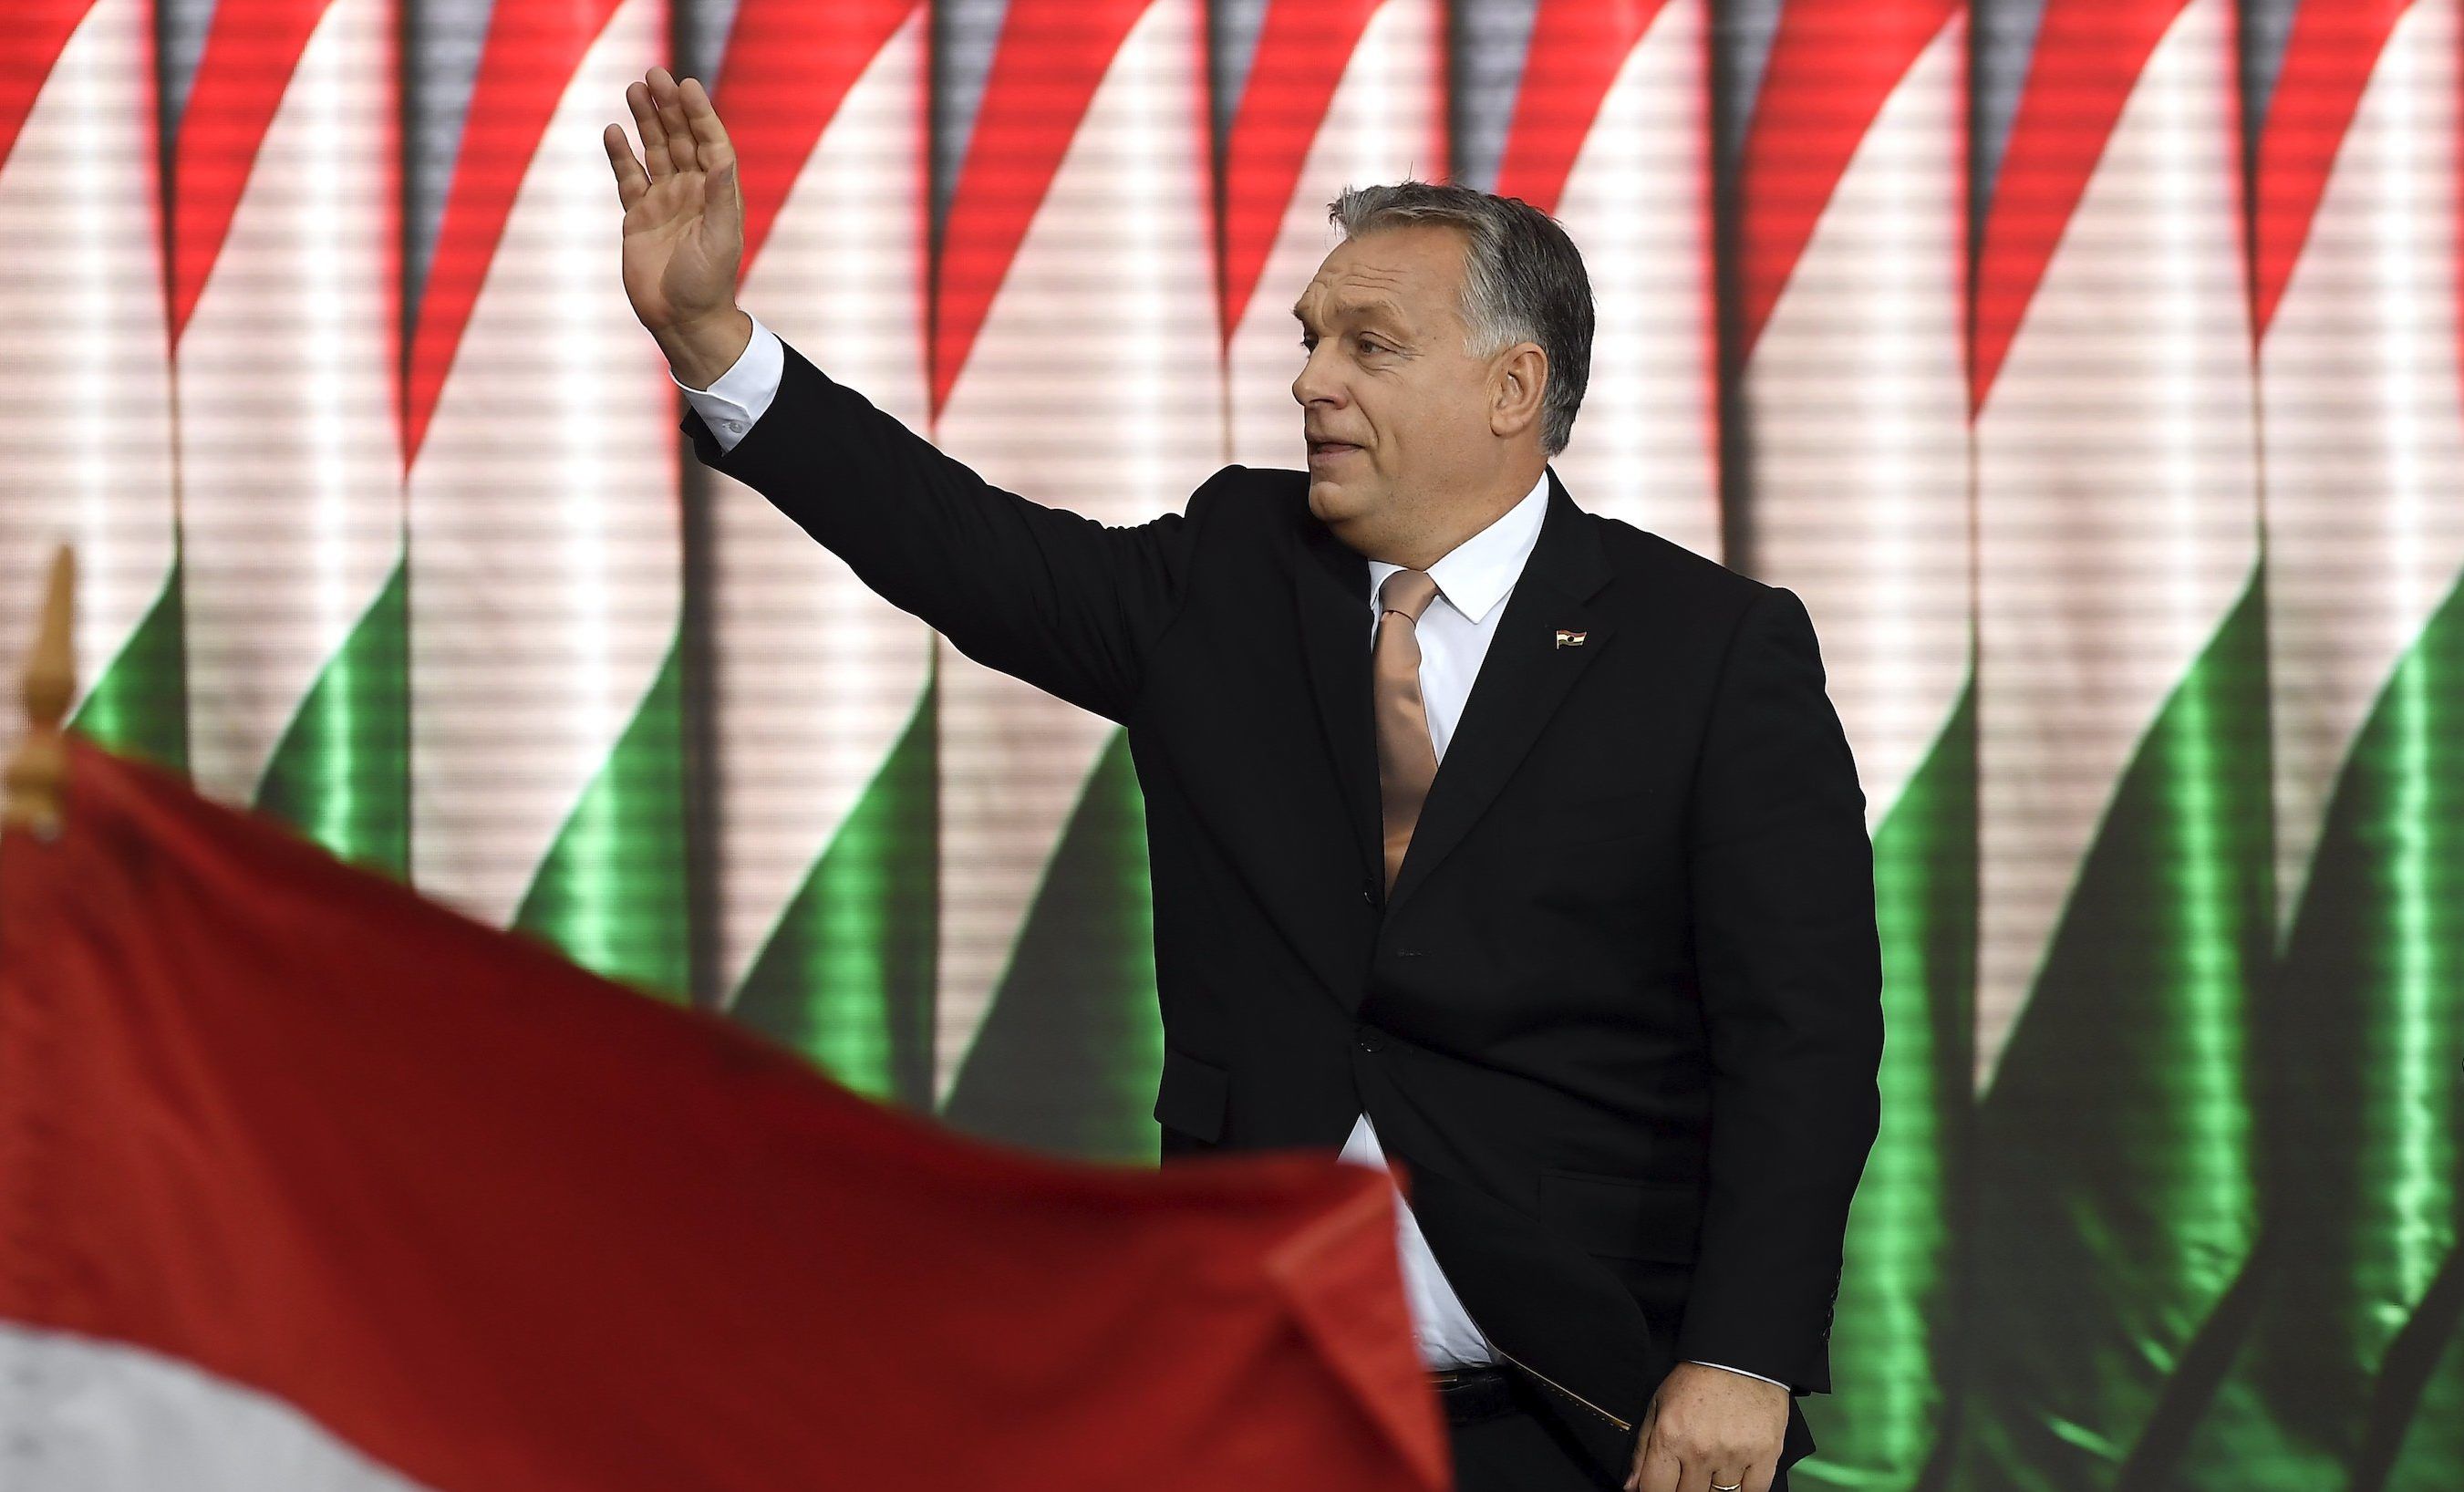 Orbán Viktor nem mond nyilvános beszédet október 23-án